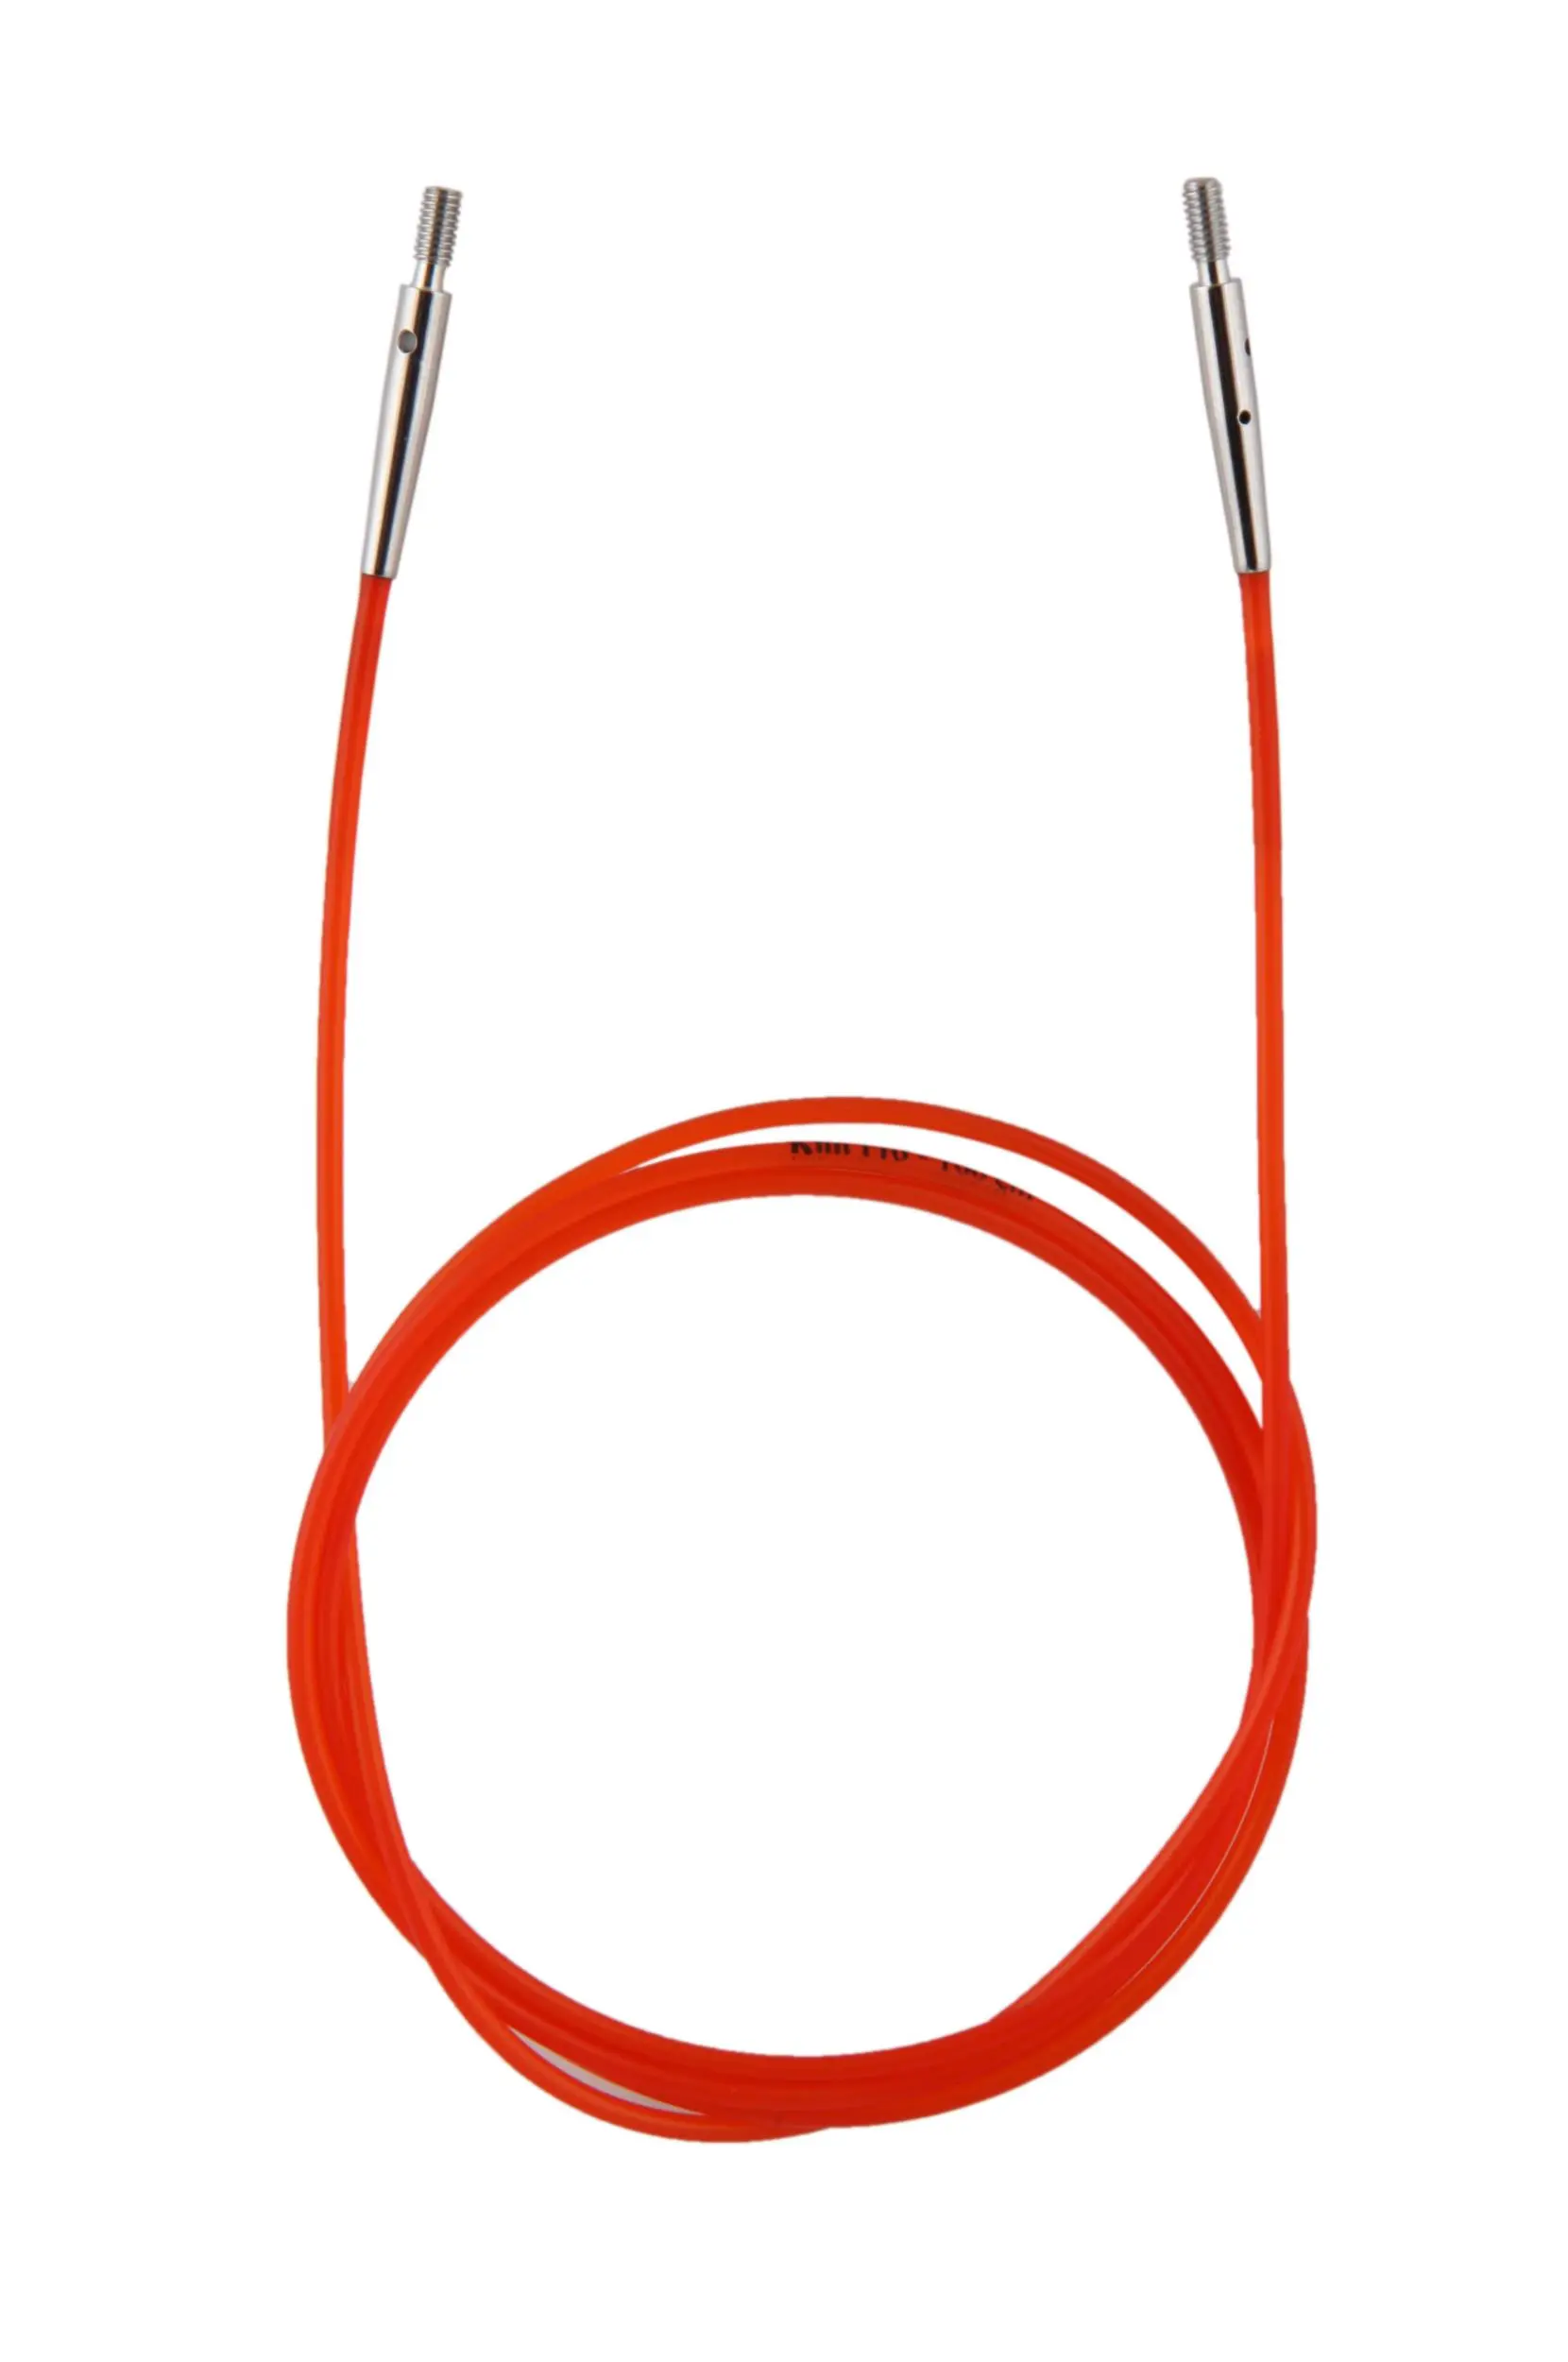 10635 Кабель Red (Червоний) для створення кругових спиць довжиною 100 см KnitPro